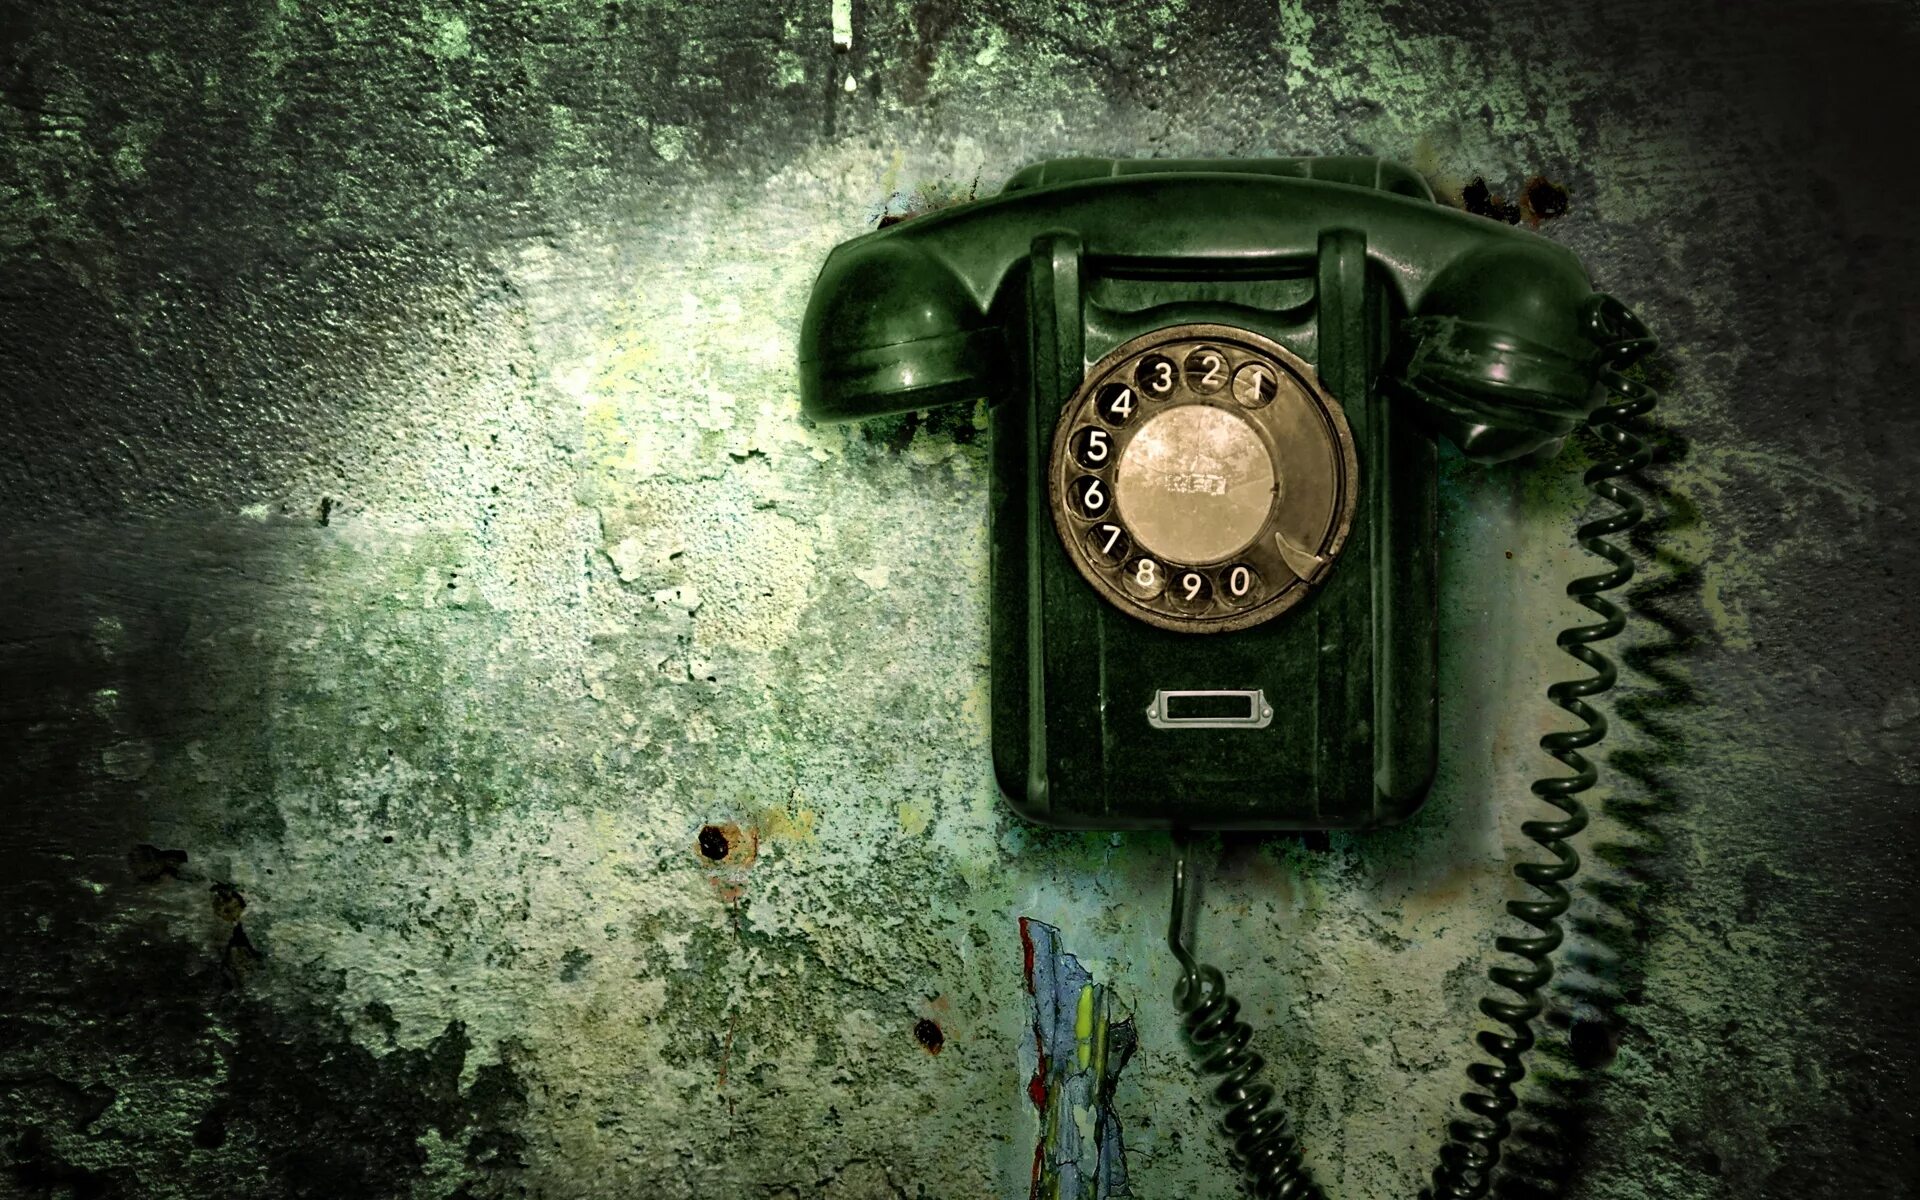 Обои на звонок телефона. Старинный телефон. Телефонная трубка. Обои на телефон. Картинки на телефон.